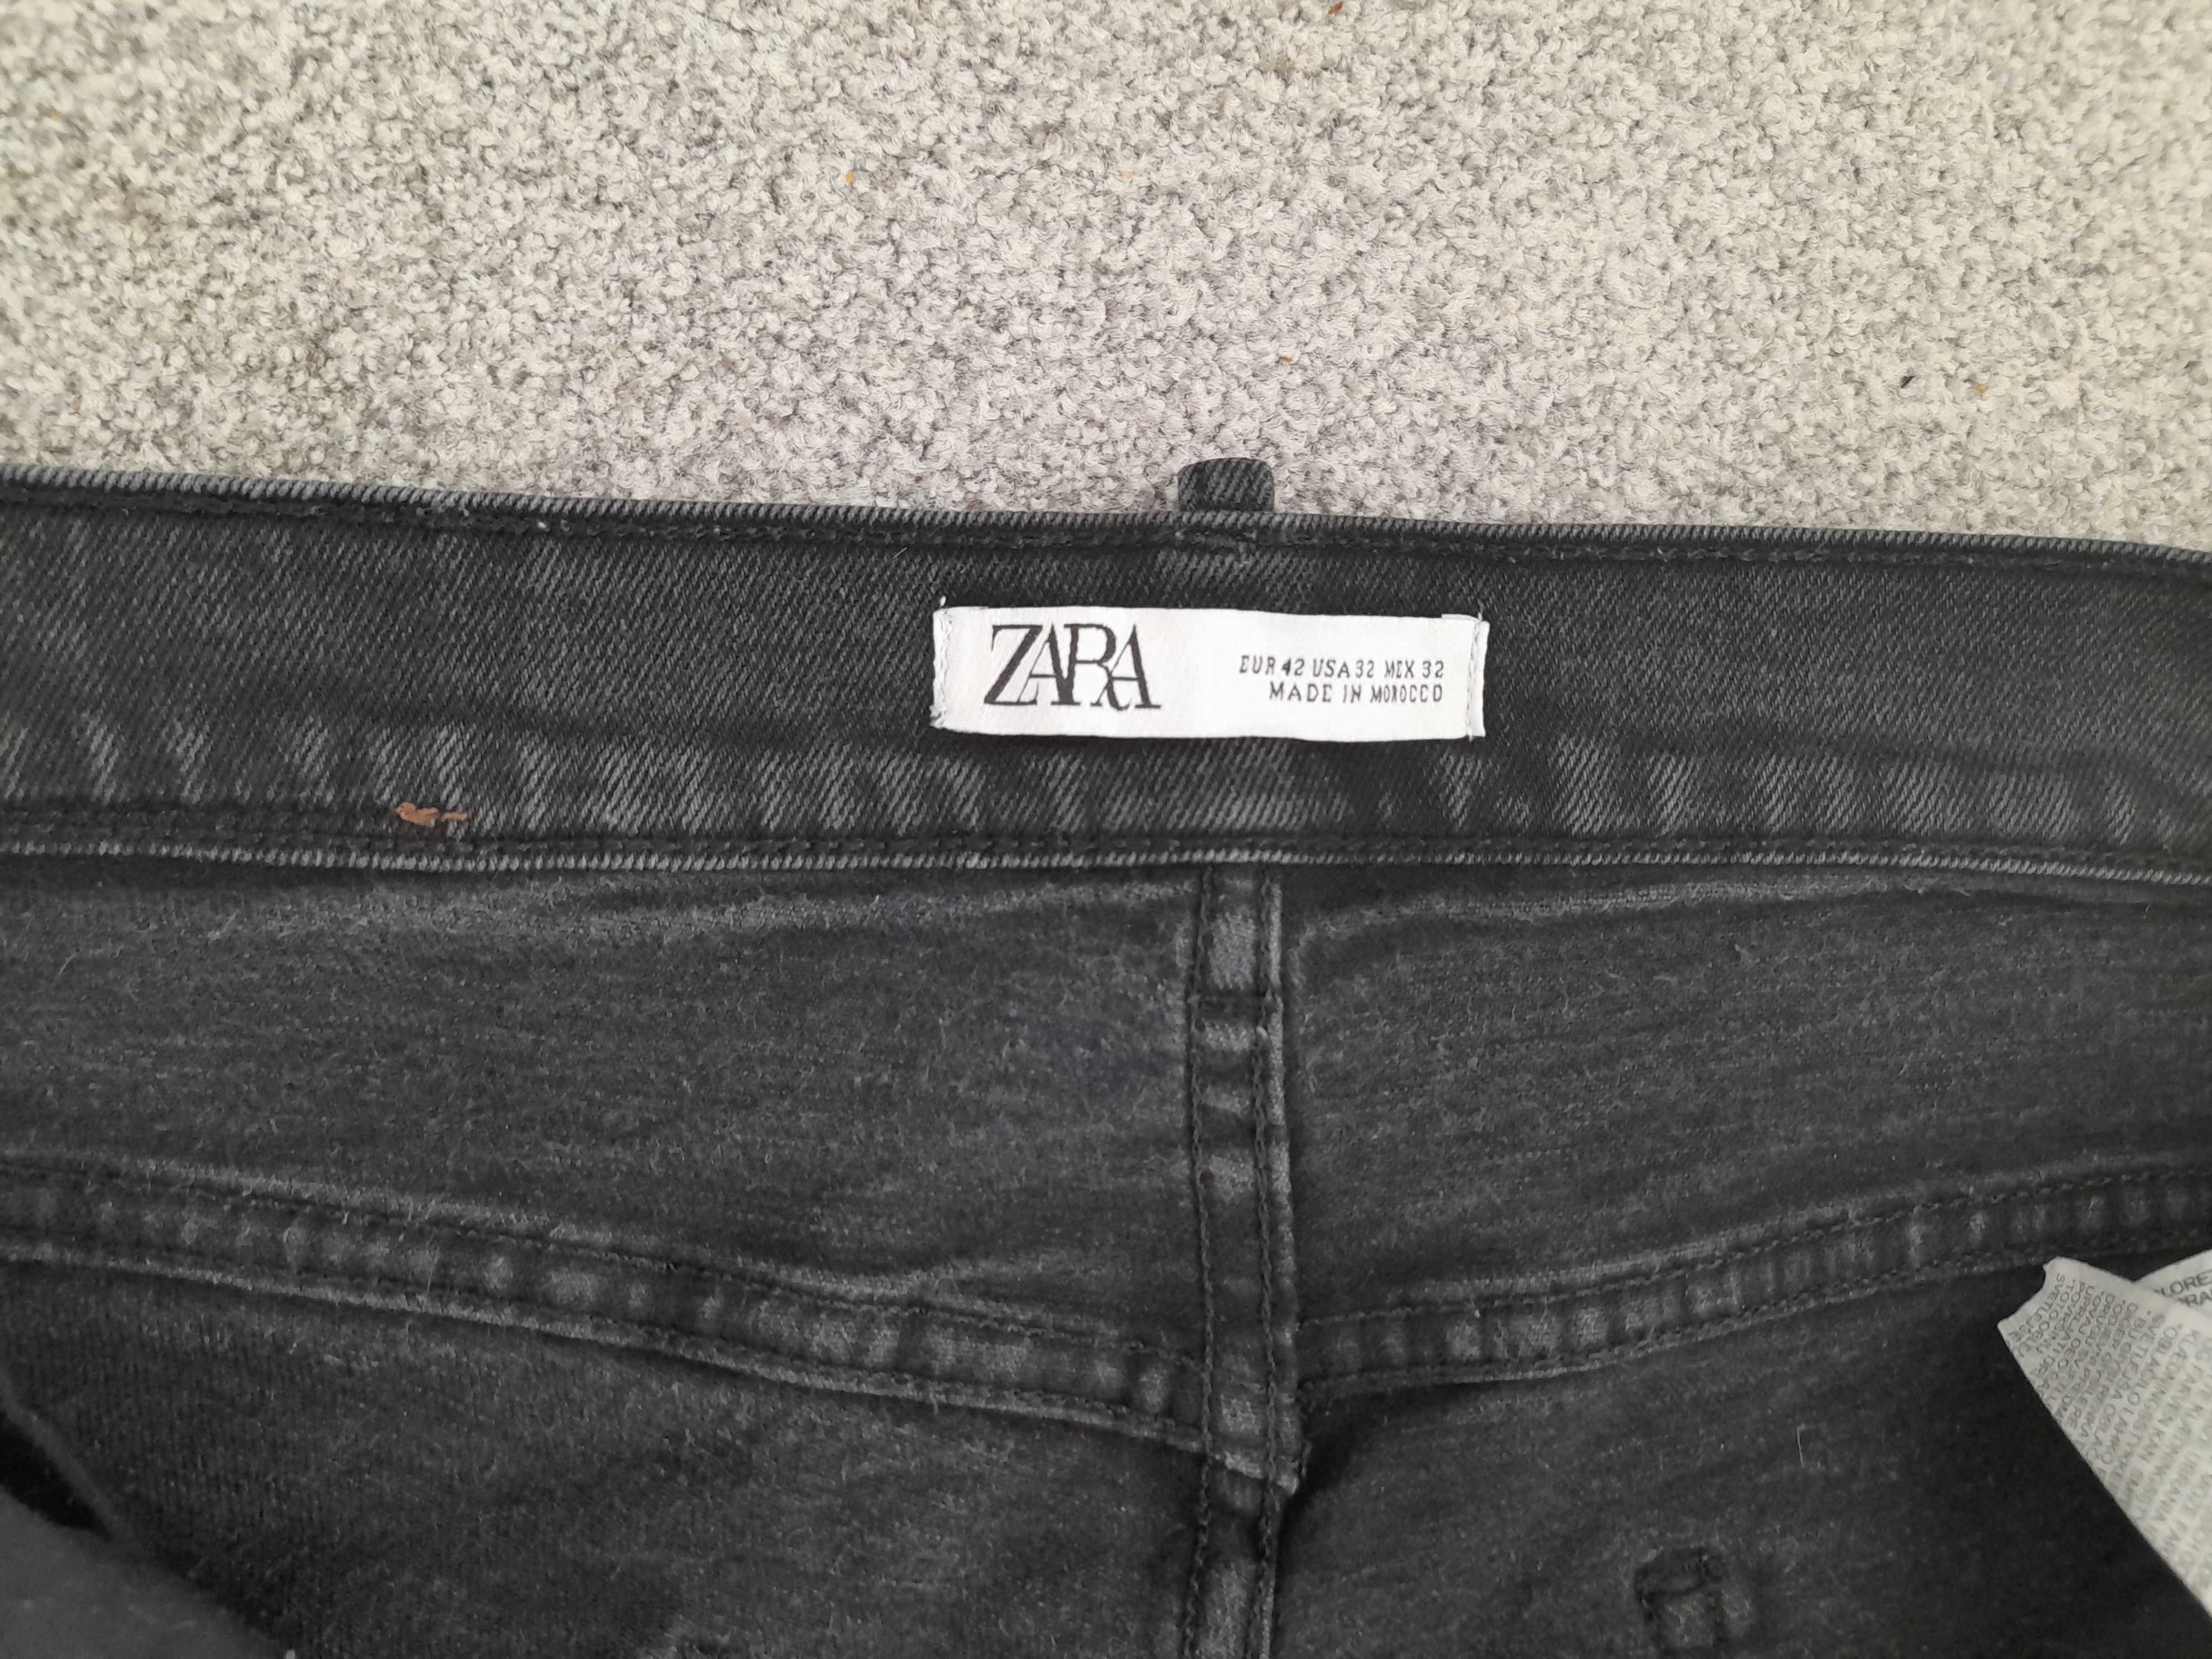 Spodnie ZARA MAN, rozmiar 42, Denim, jeans